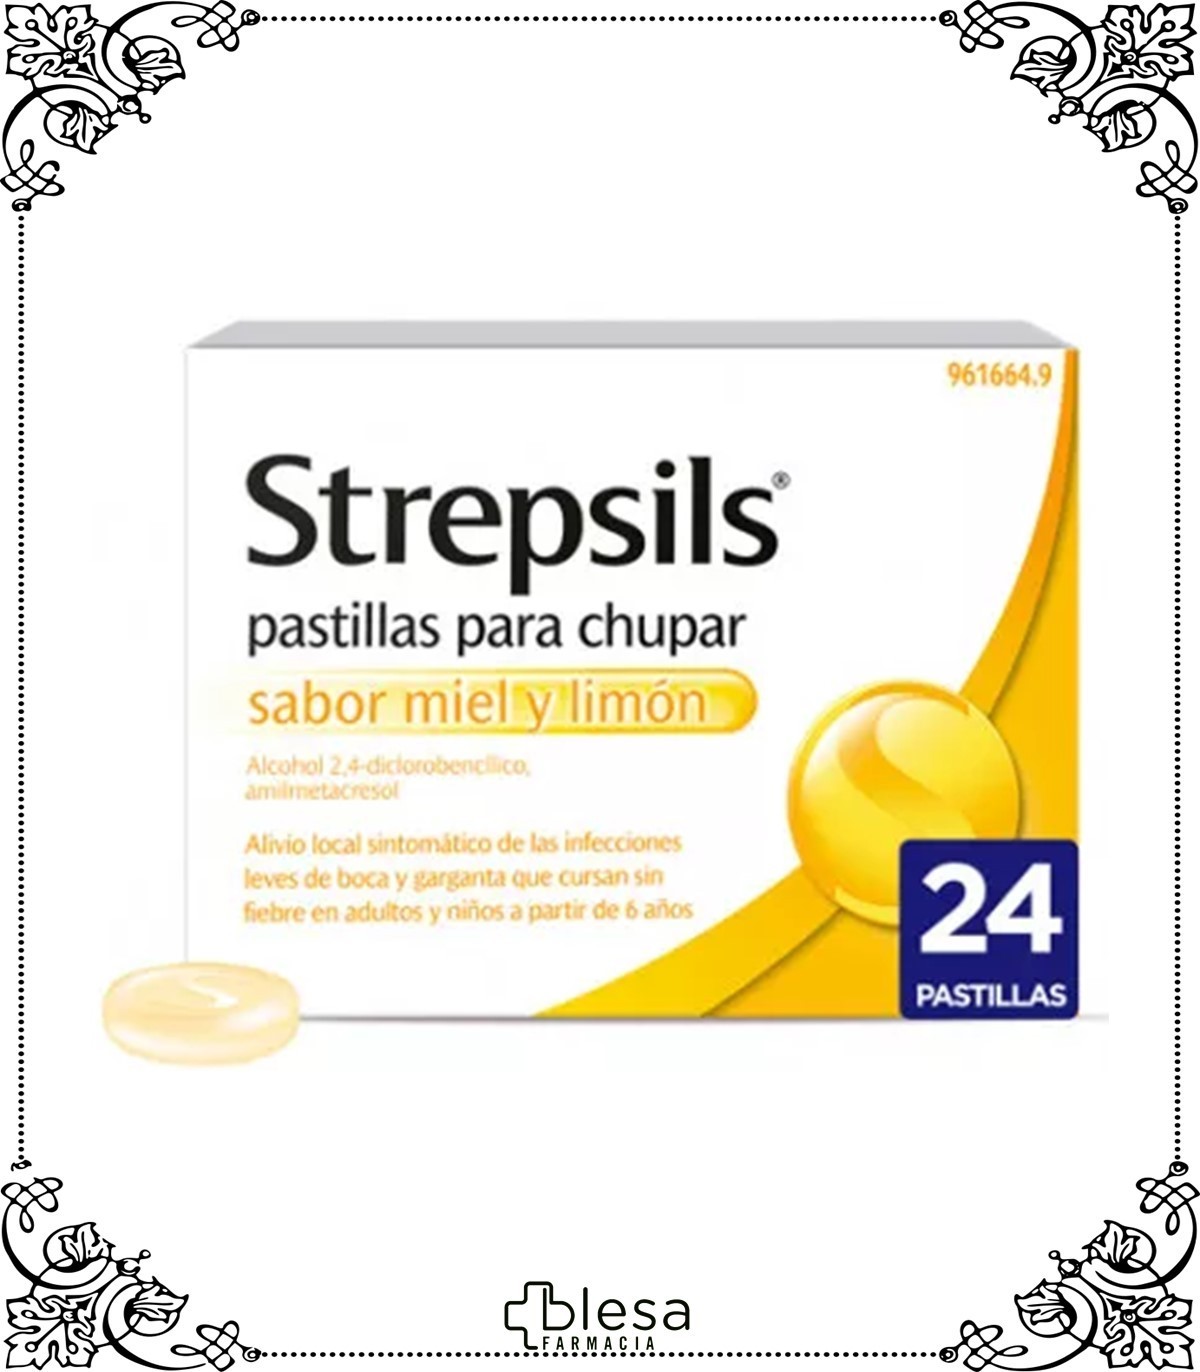 Strepsils 24 pastillas para chupar con Lidocaína